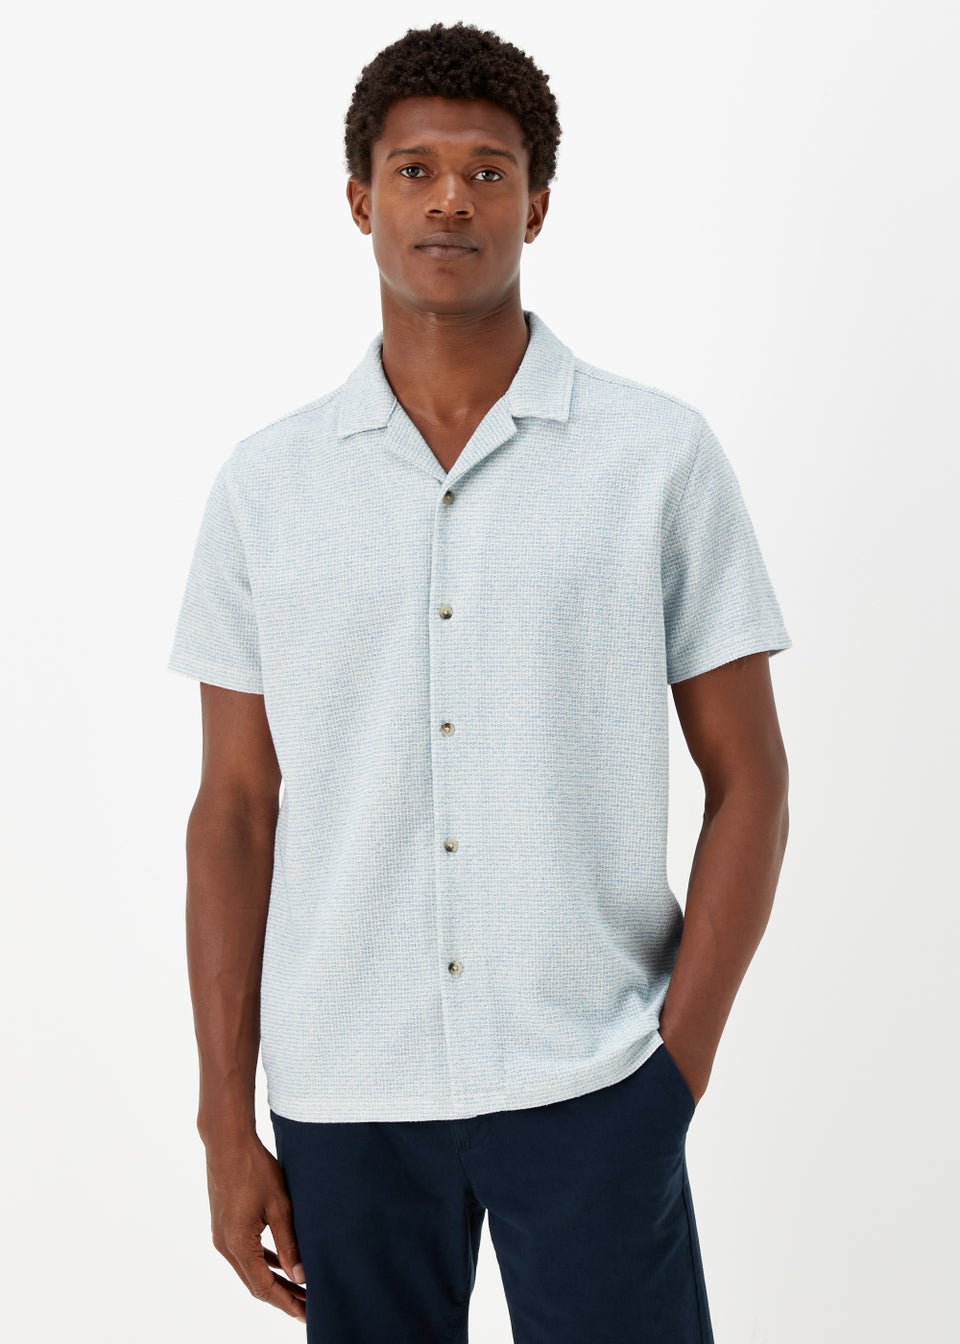 Blue Textured Jersey Short Sleeve Shirt - Matalan